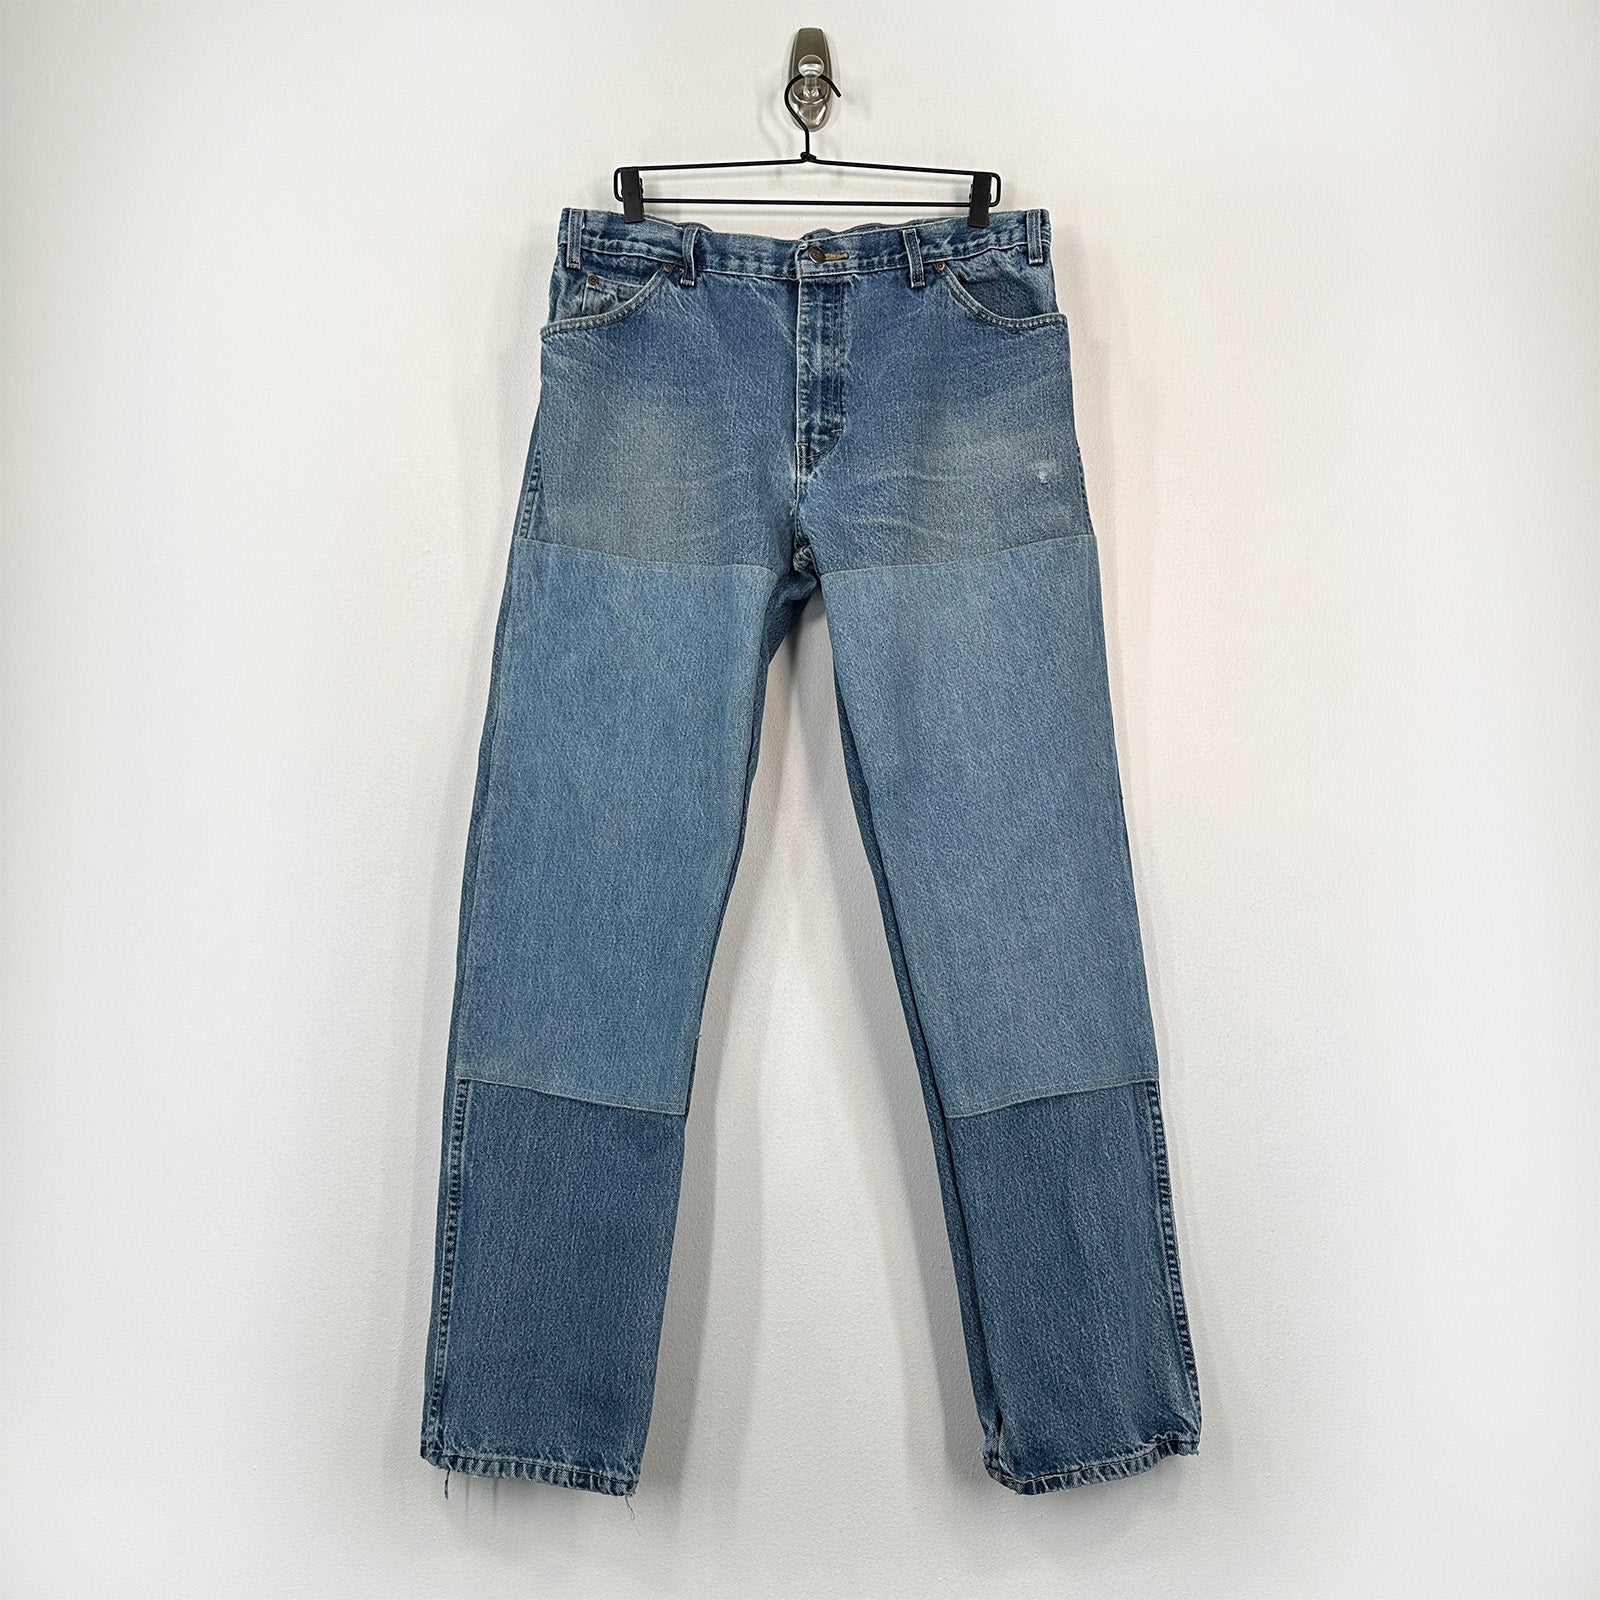 Custom Double Knee Dickies Jeans - 36x33 Great Lakes Reclaimed Denim